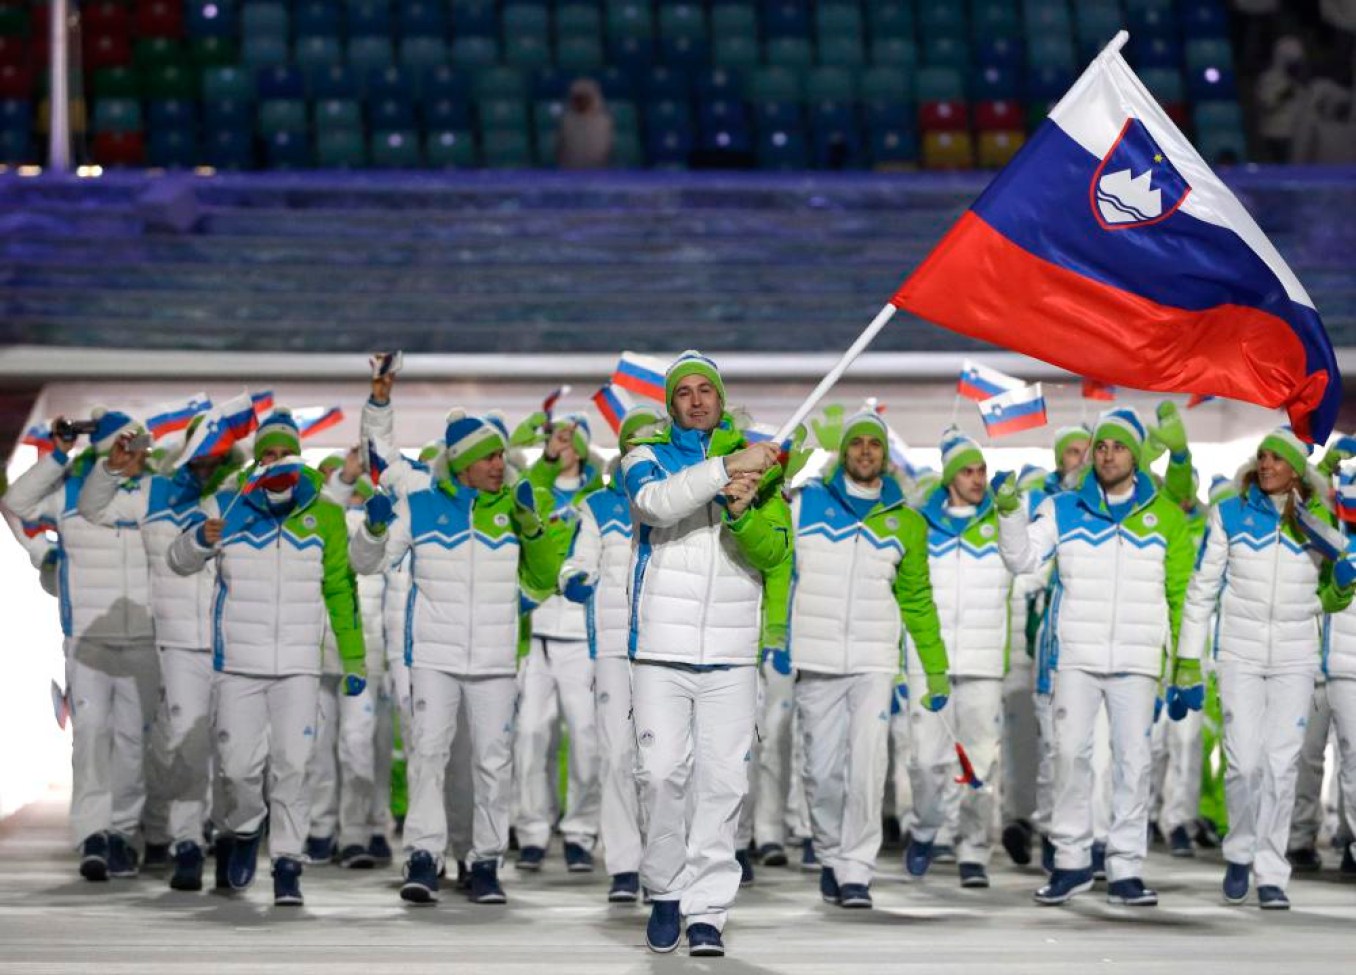 Tomaz Razingar de Slovénie porte le drapeau national alors qu'il mène l'équipe lors de la cérémonie d'ouverture des Jeux olympiques d'hiver de 2014 à Sotchi, en Russie, le vendredi 7 février 2014. (AP Photo / Mark Humphrey)